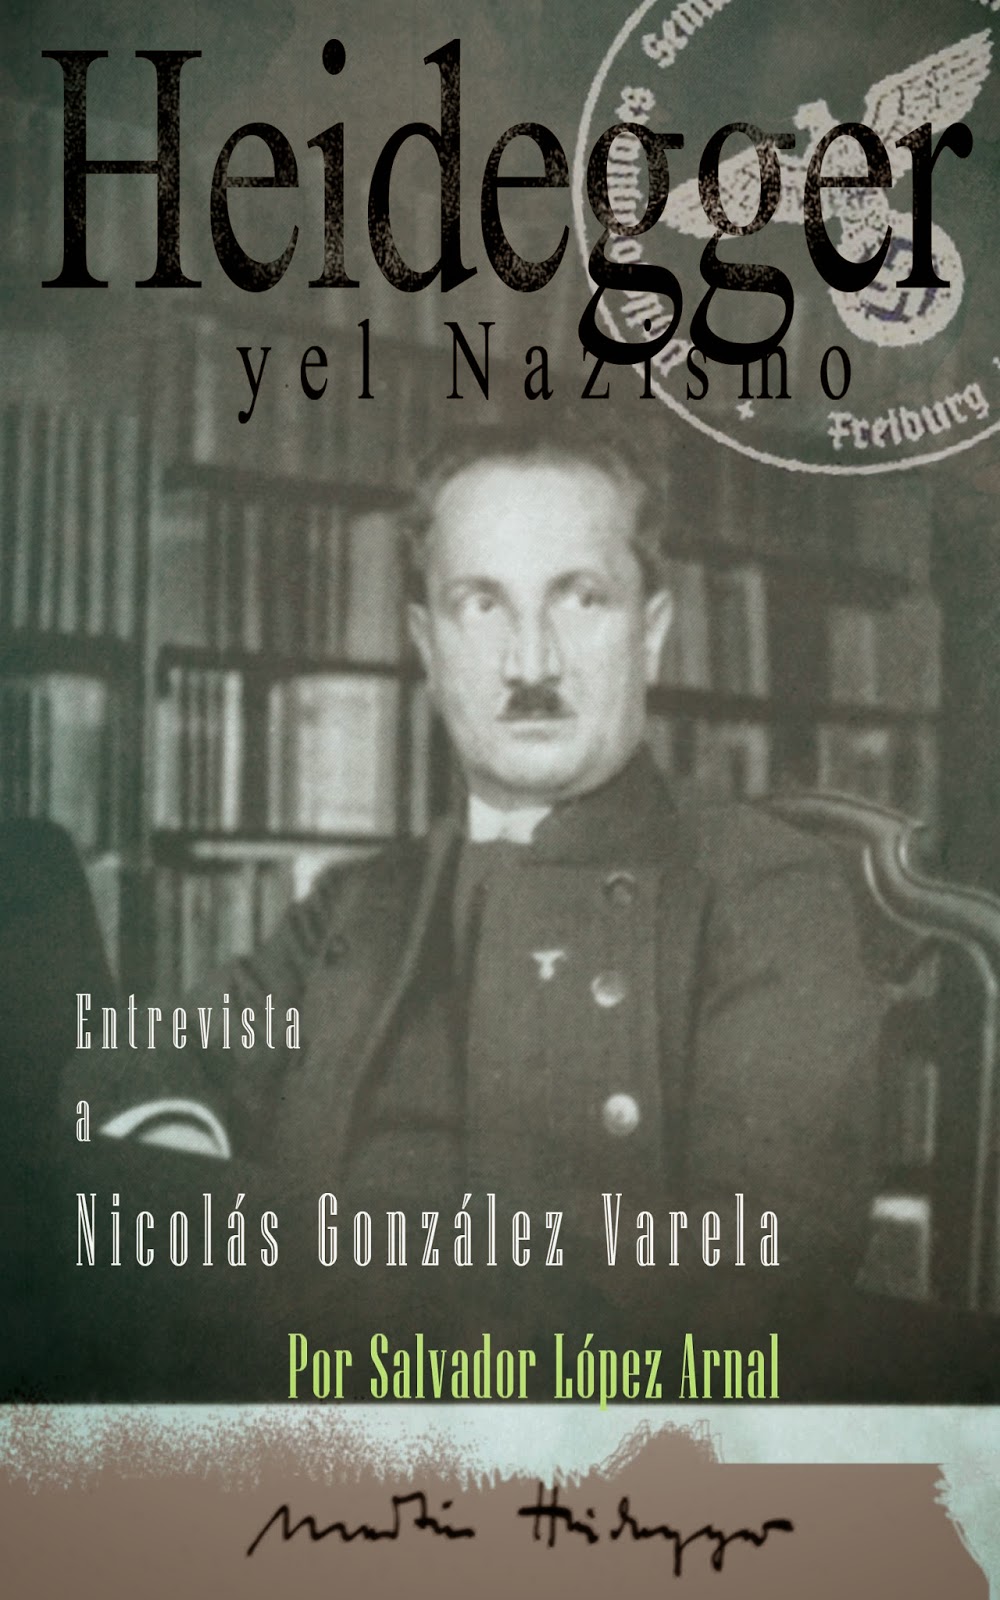 http://es.scribd.com/doc/206960982/Dossier-Heidegger-y-el-Nazismo-Entrevista-a-Nicolas-Gonzalez-Varela-por-Salvador-Lopez-Arnal-Febrero-2014